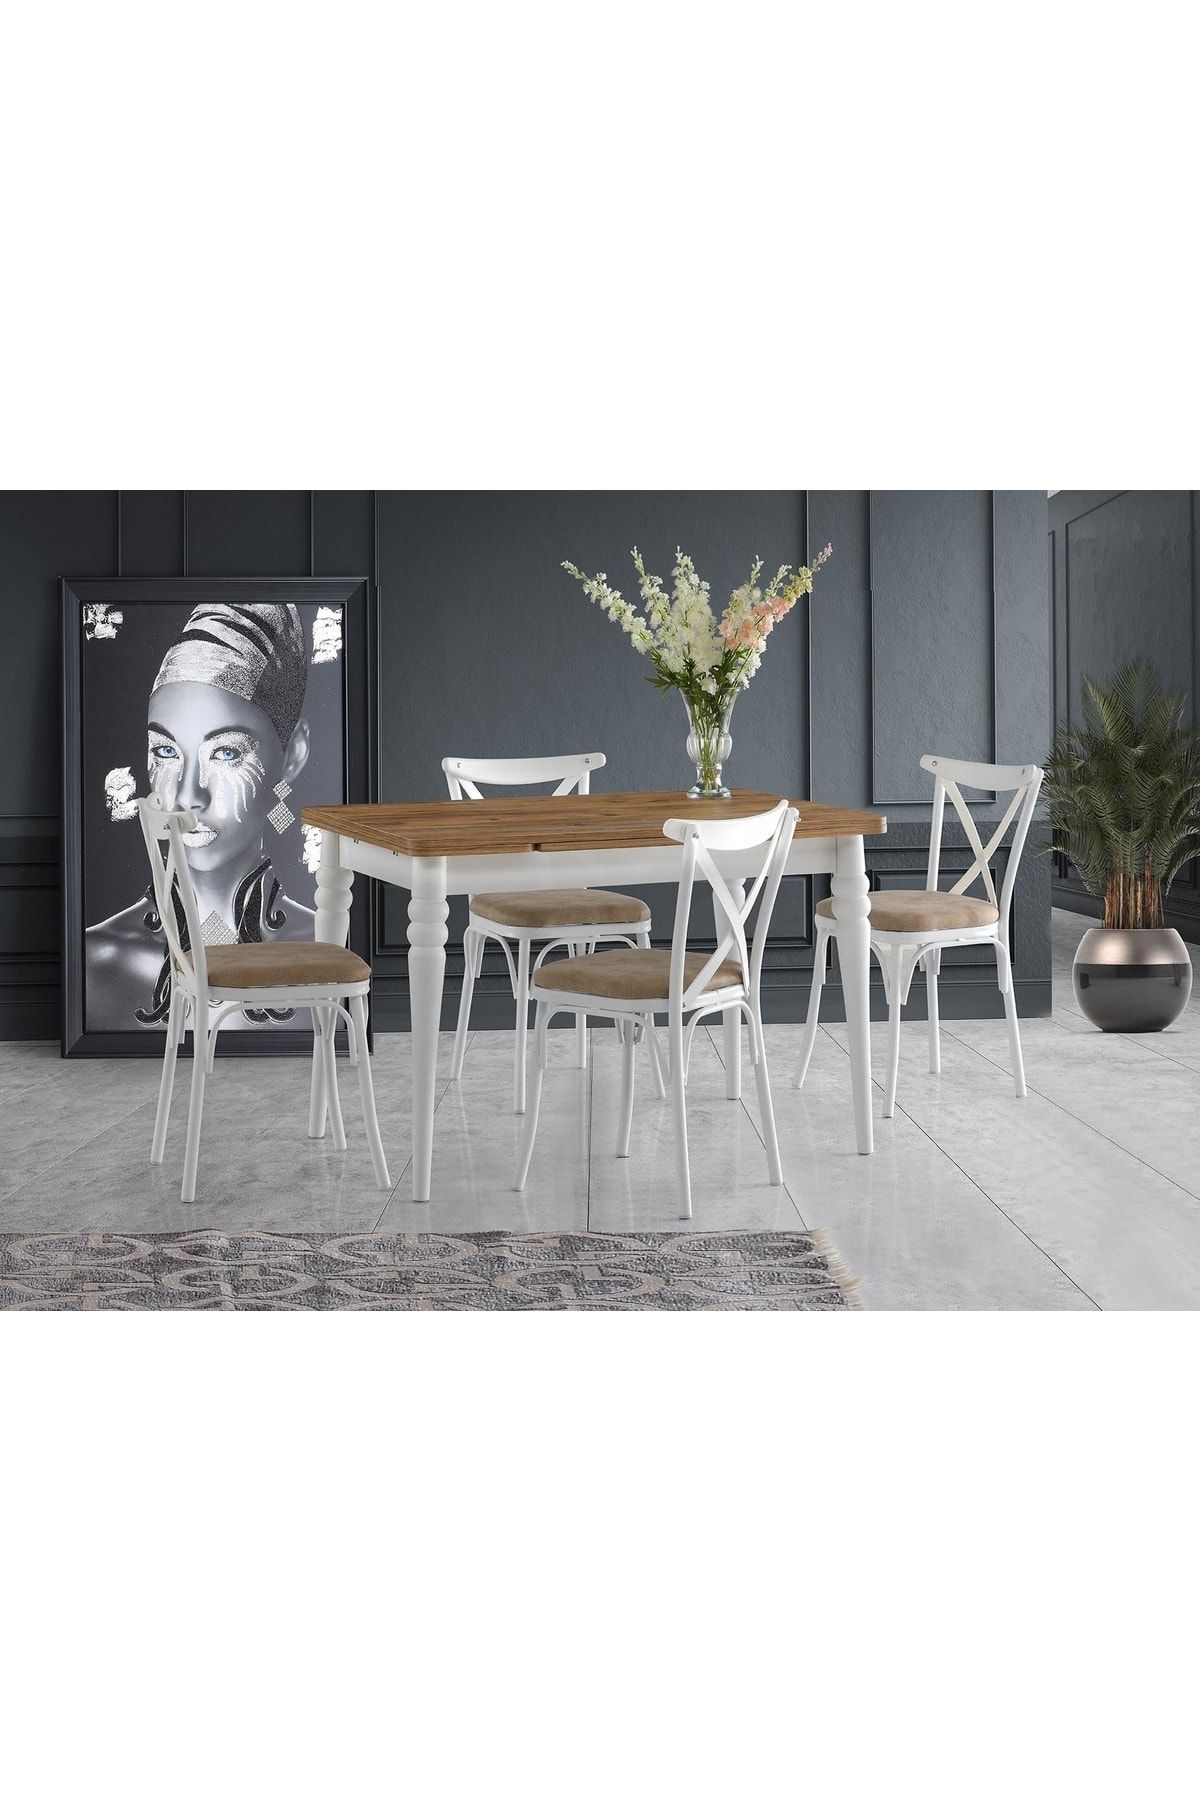 burenze Exclusive Açılabilen 170x80 Cm Çam Desenli Mutfak Masa Takımı Kaşıklıklı Beyaz Ahşap 4'lü Sandalye